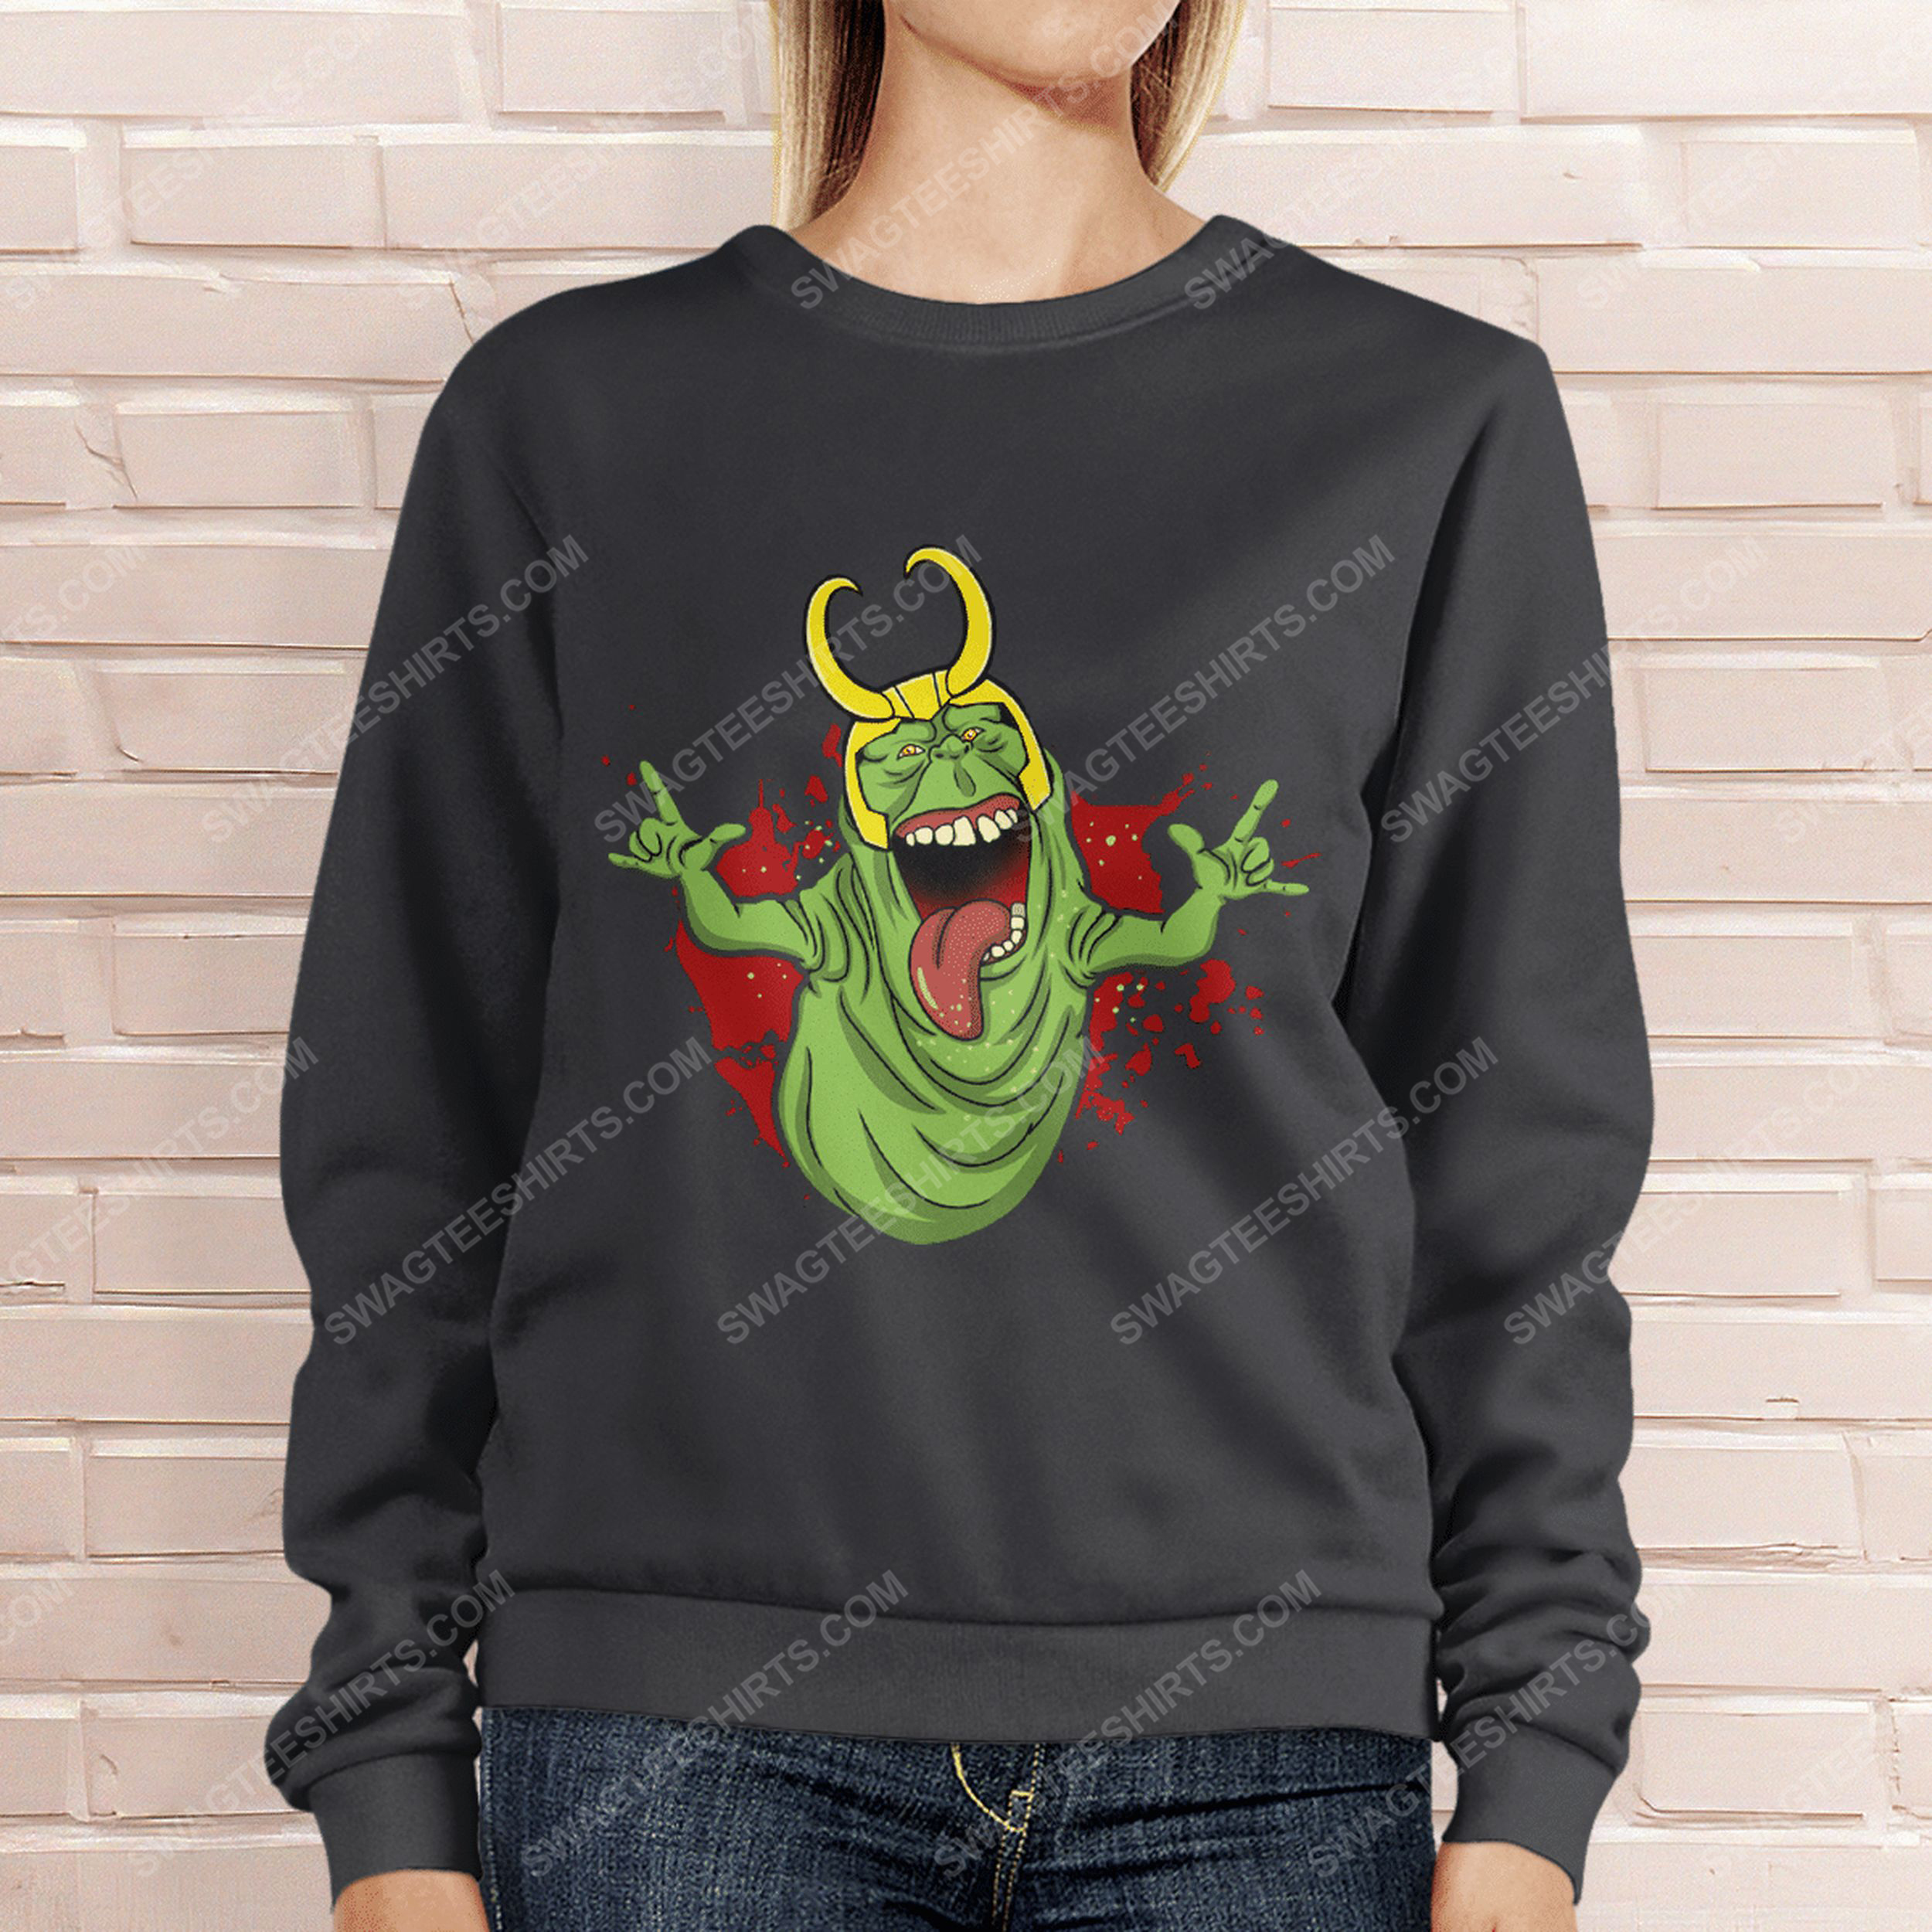 Ghostbusters onionhead slimer and loki sweatshirt 1(1)